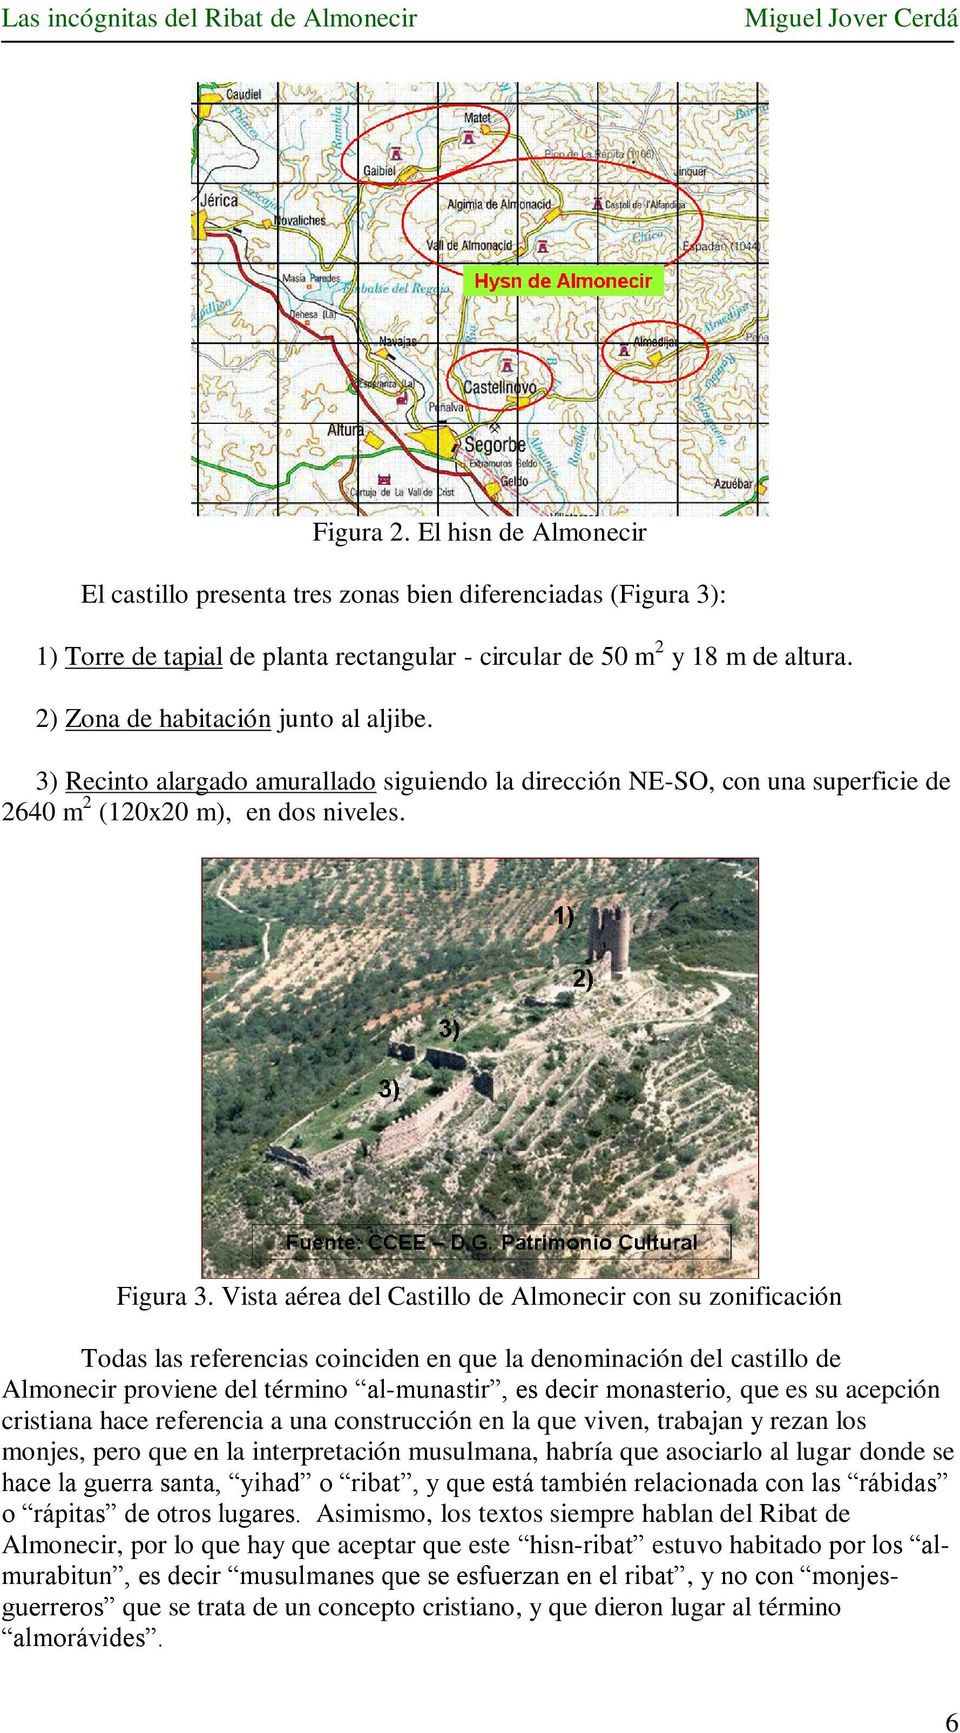 Vista aérea del Castillo de Almonecir con su zonificación Todas las referencias coinciden en que la denominación del castillo de Almonecir proviene del término al-munastir, es decir monasterio, que